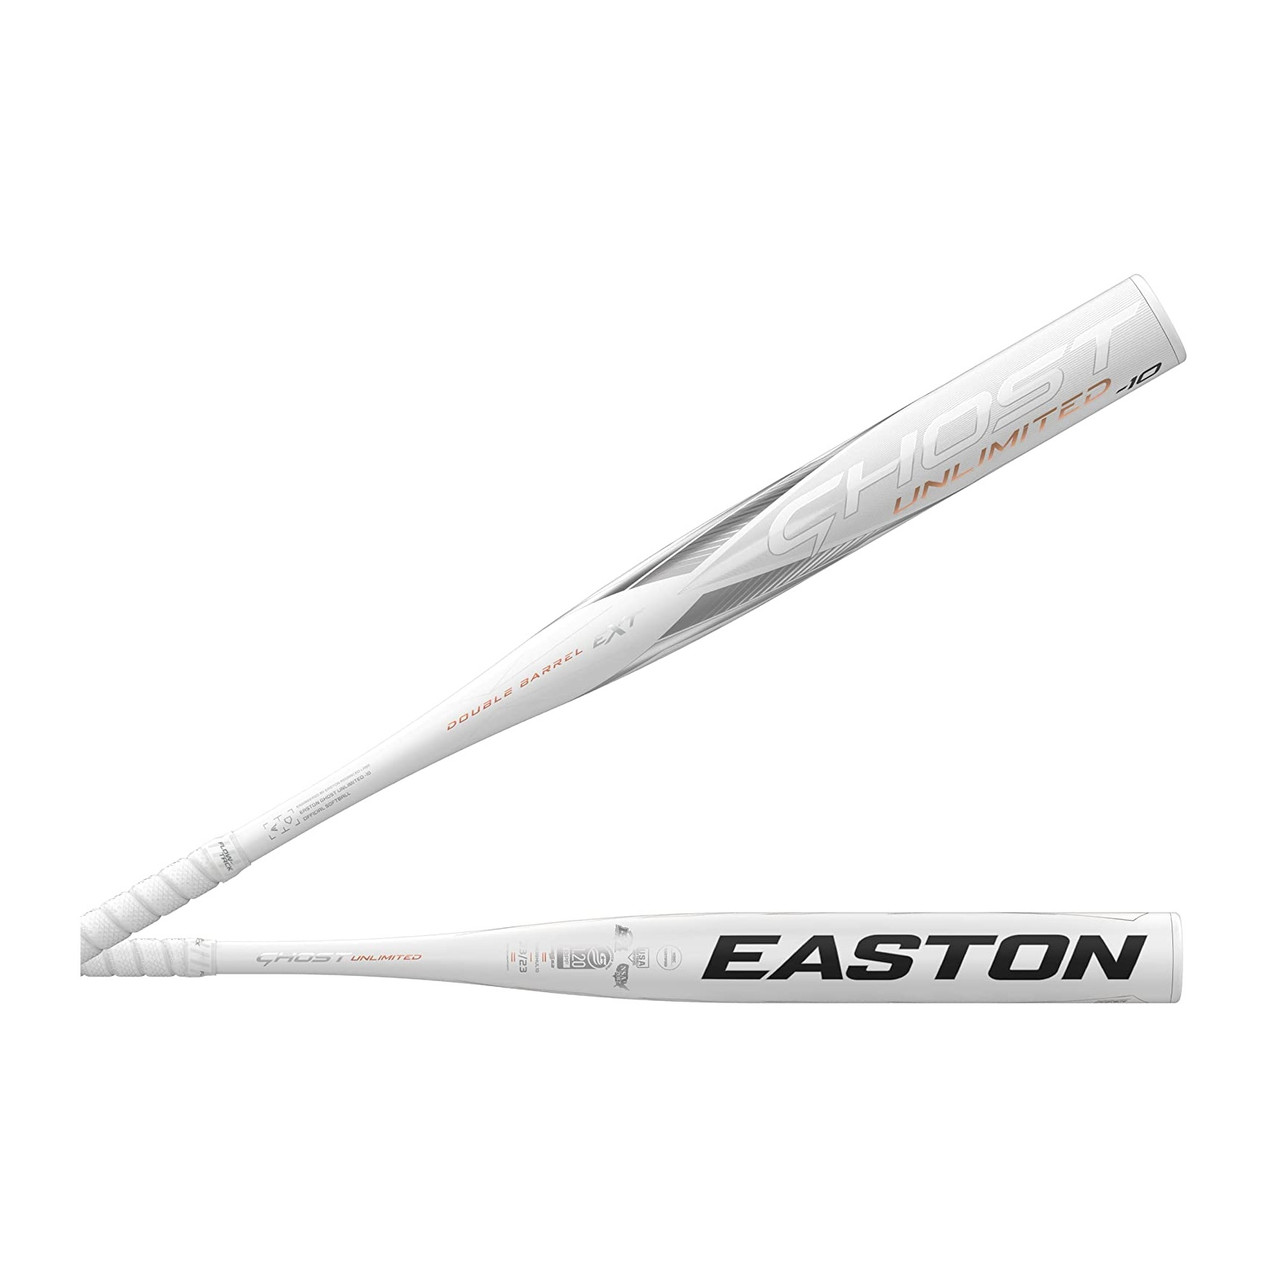 Easton Ghost Unlimited FP23GHUL -11 Fastpitch Softball Bat 33 inch 22 oz